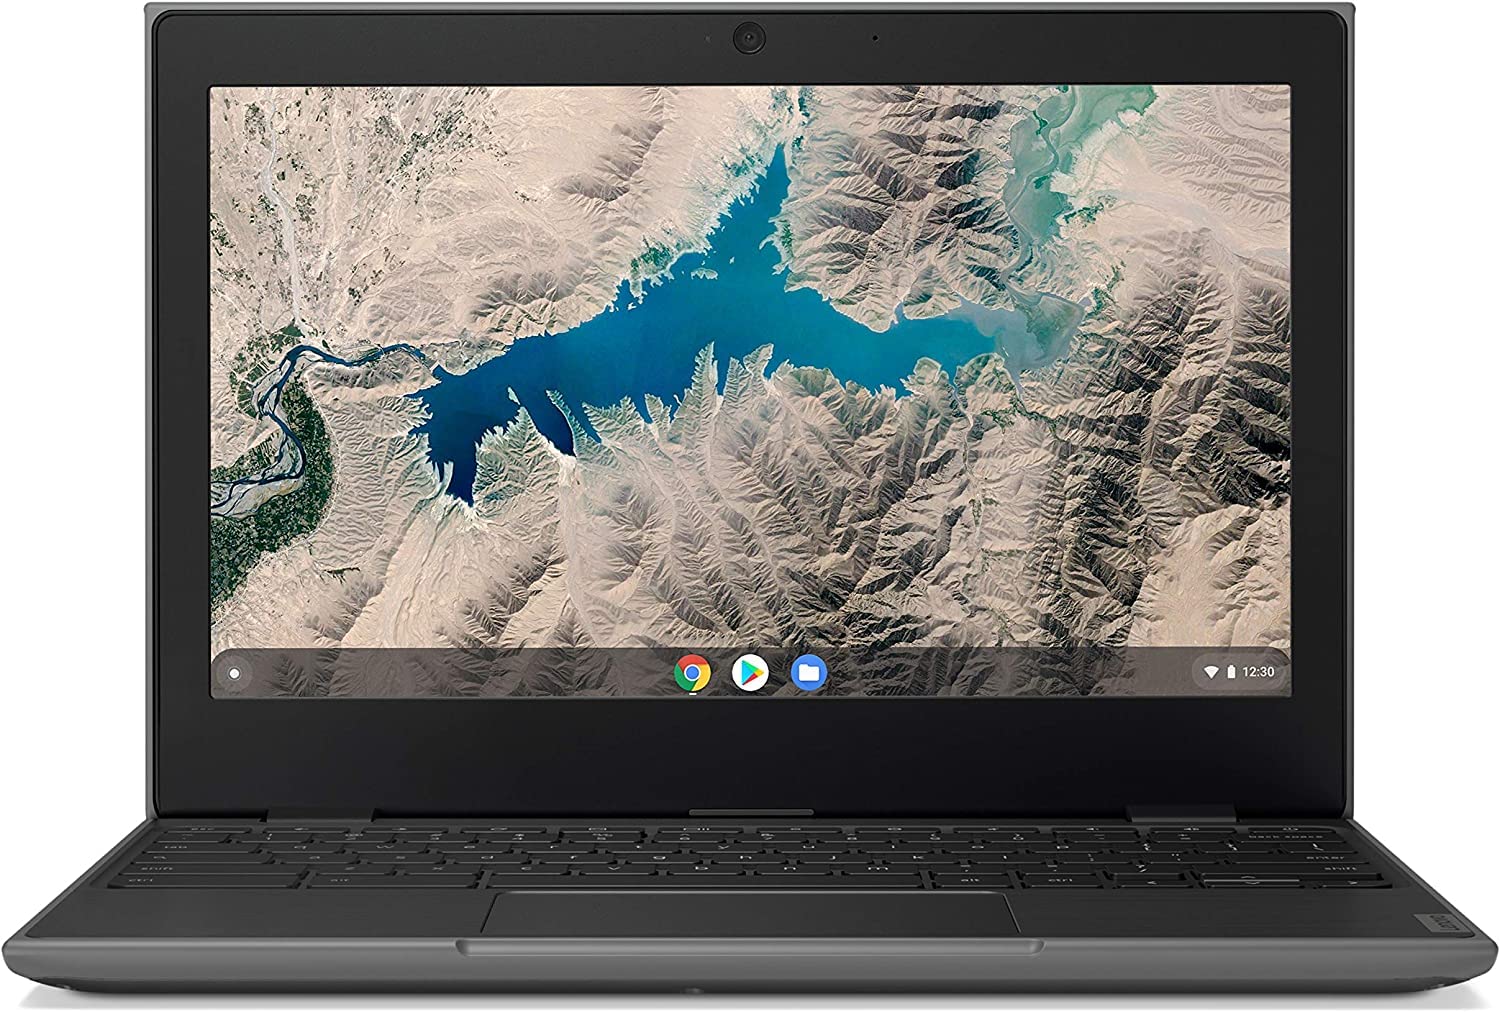 Lenovo hat dieses Chromebook von 319 € auf 179 € reduziert